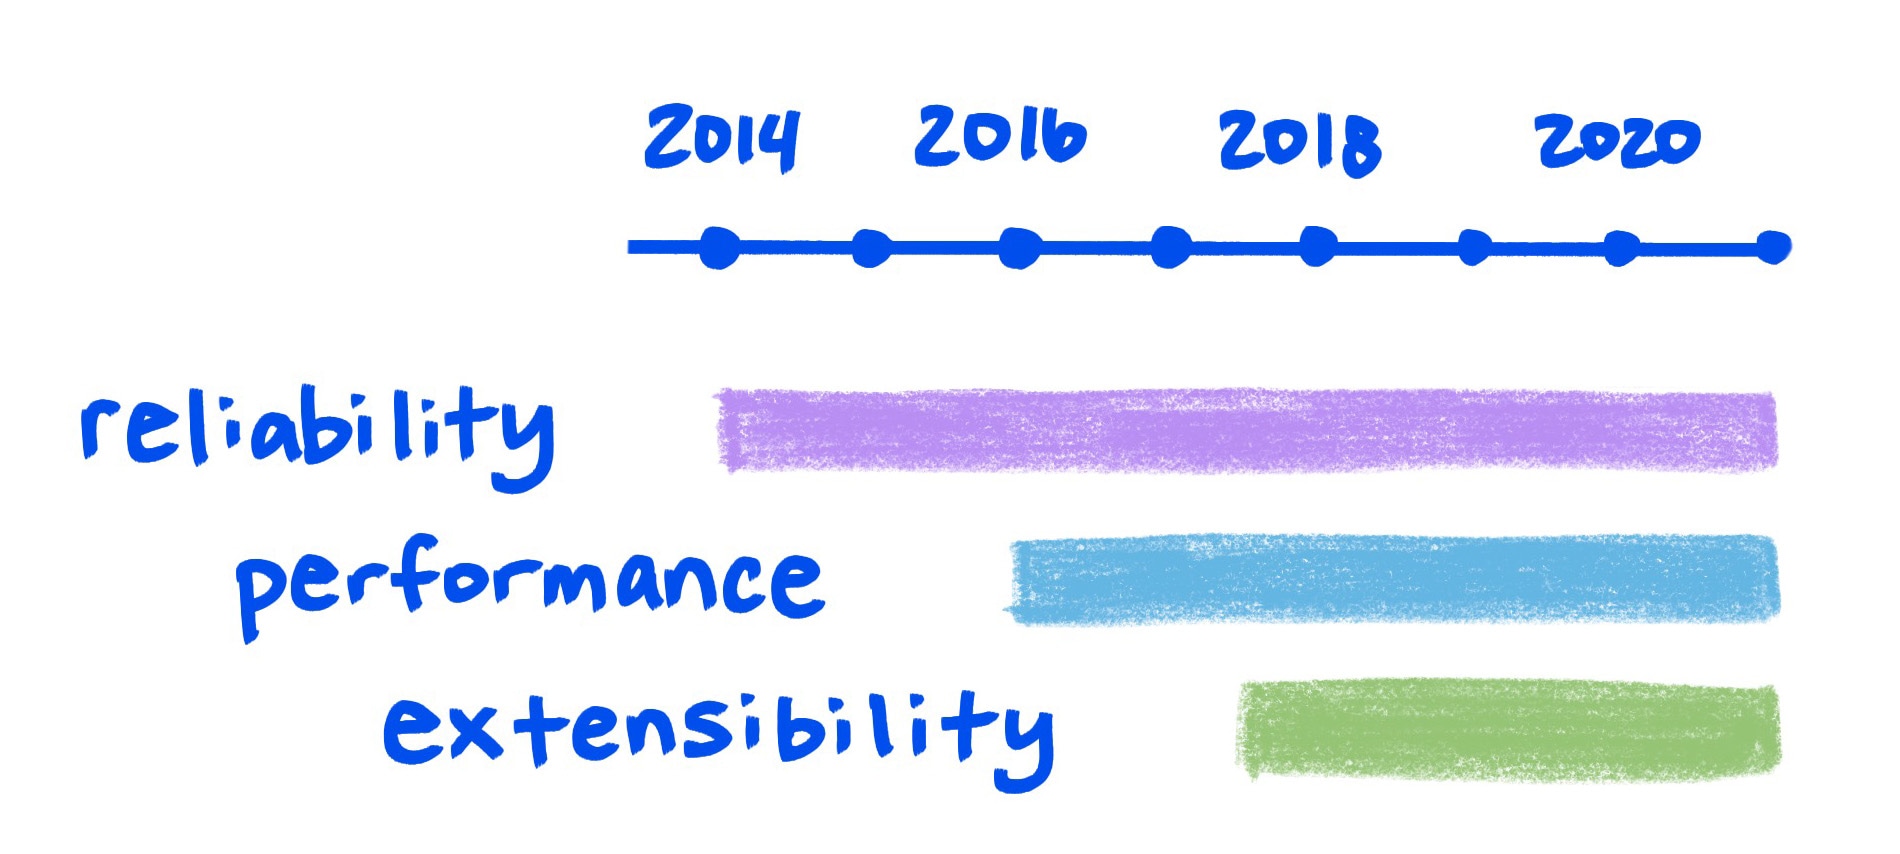 시간 경과에 따라 개선되는 안정성, 성능, 확장성을 보여주는 스케치 그래프